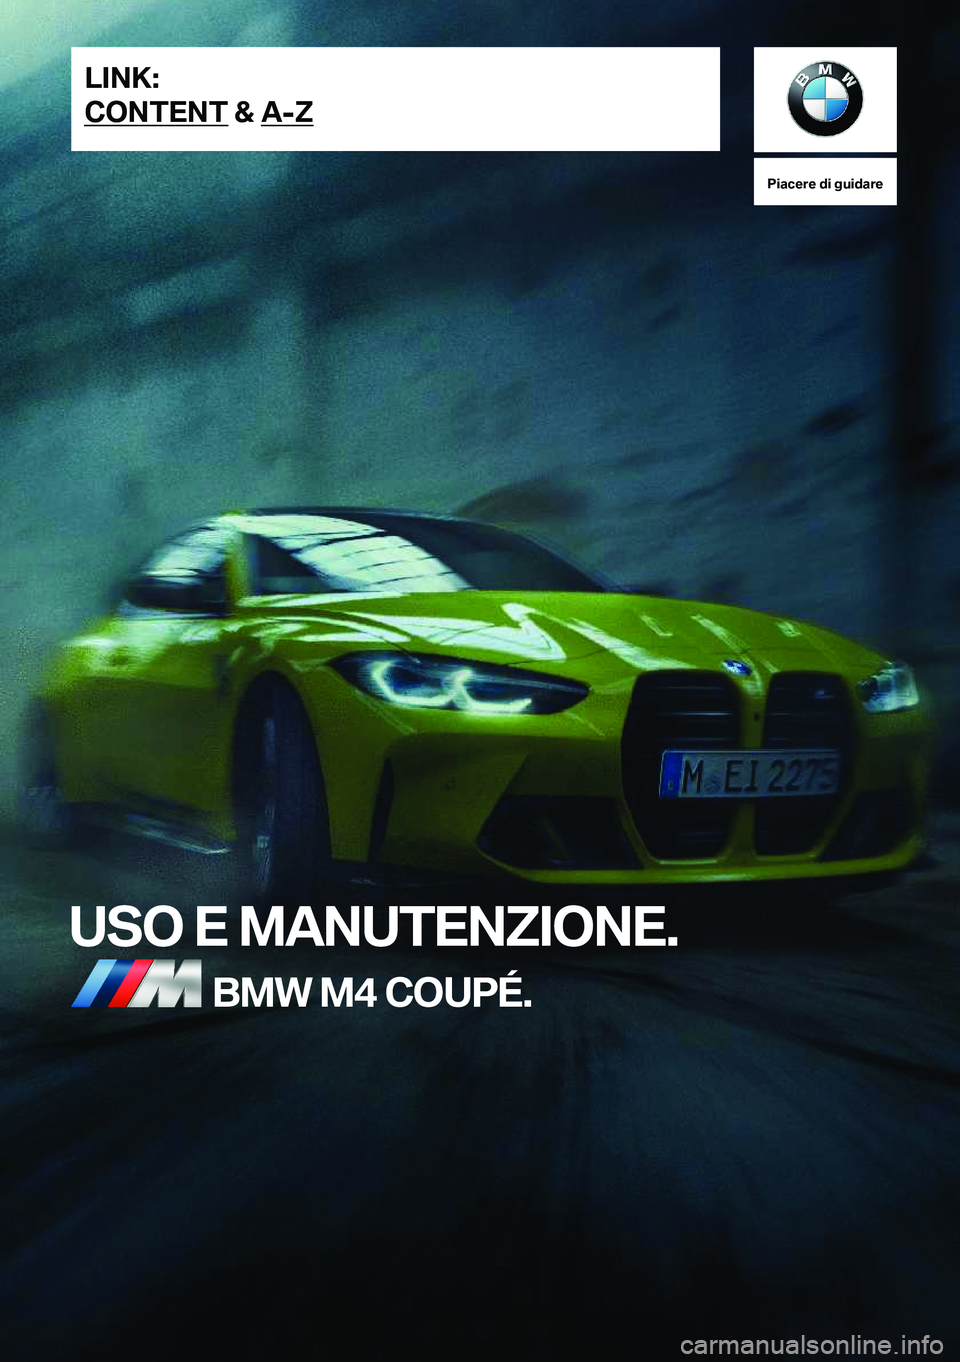 BMW M4 2021  Libretti Di Uso E manutenzione (in Italian) �P�i�a�c�e�r�e��d�i��g�u�i�d�a�r�e
�U�S�O��E��M�A�N�U�T�E�N�Z�I�O�N�E�.�B�M�W��M�4��C�O�U�P�